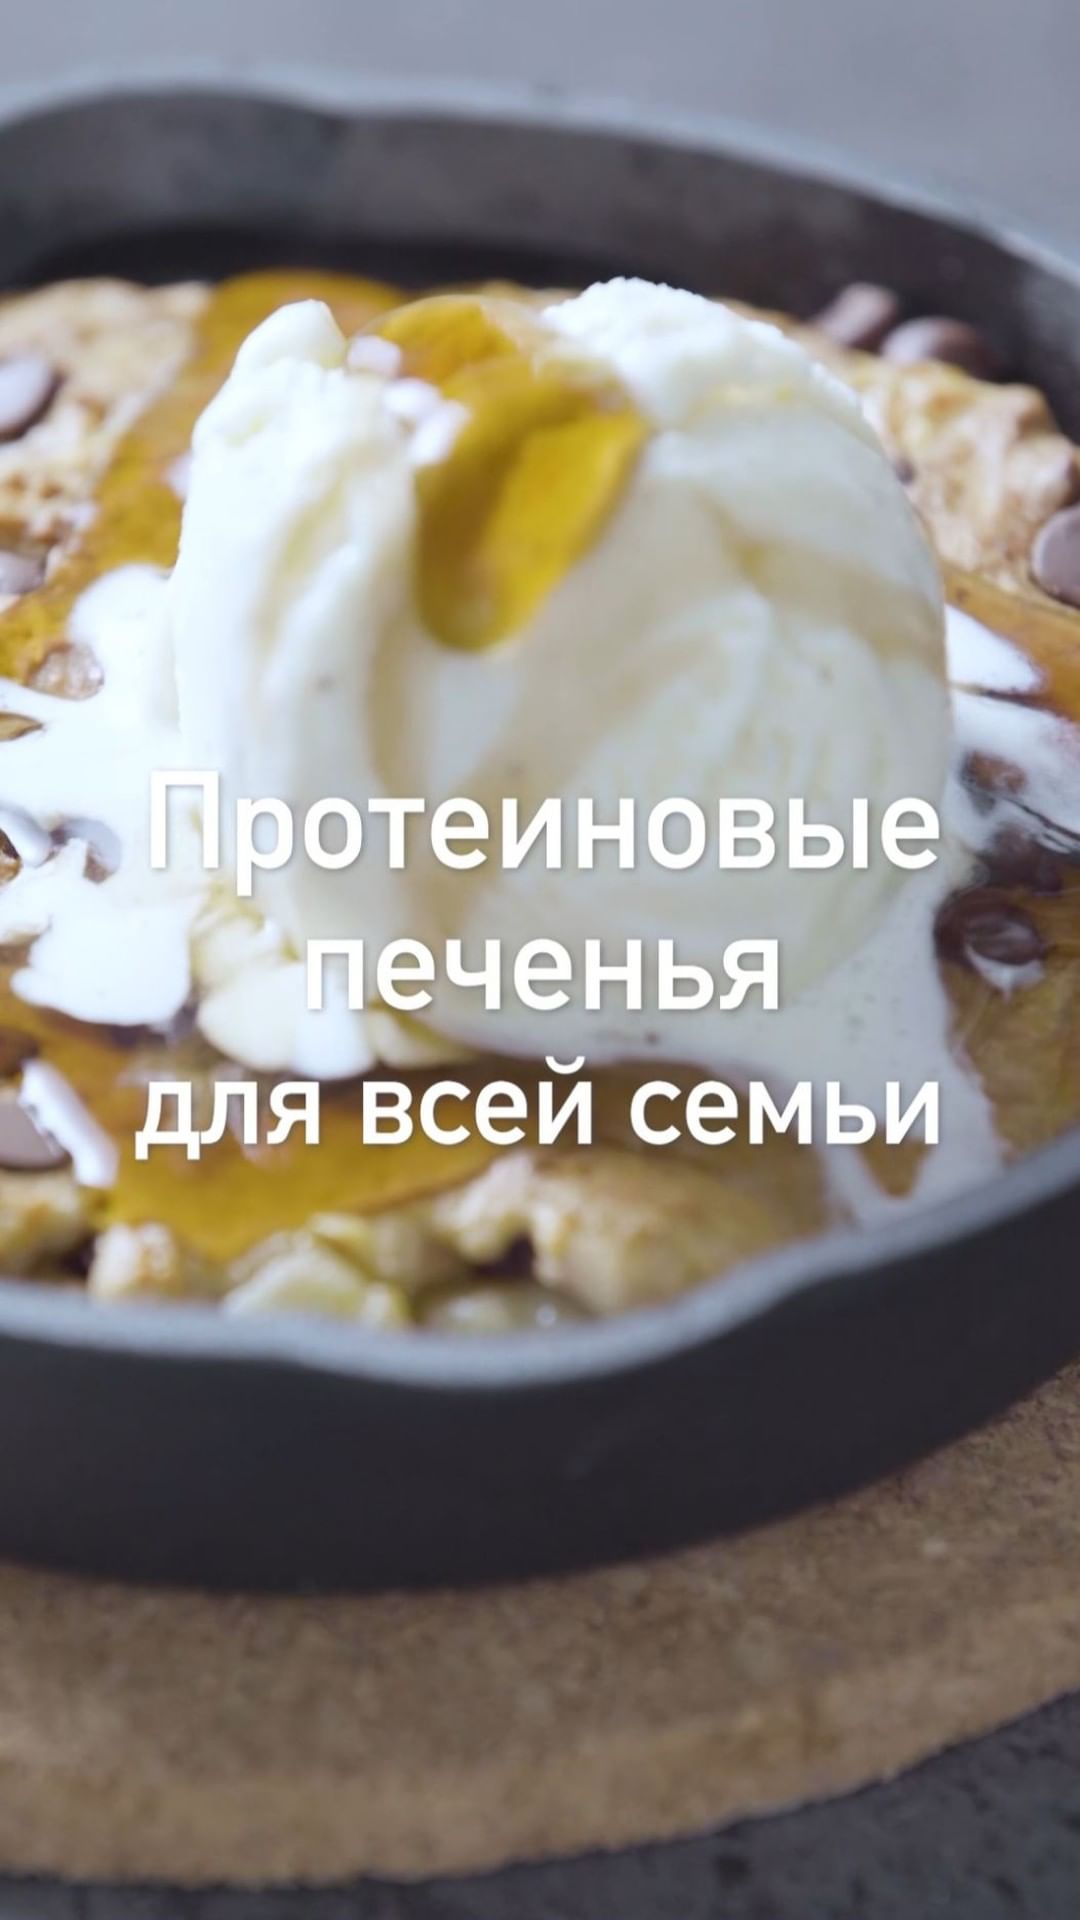 Myprotein Russia 🇷🇺 - Такой десерт полюбится всей семье! 

Итак, готовьте ложки для этого вкусного лакомства, которое придется по вкусу всей семье! Когда хочется чего-то сладкого и полезного, наш реце...